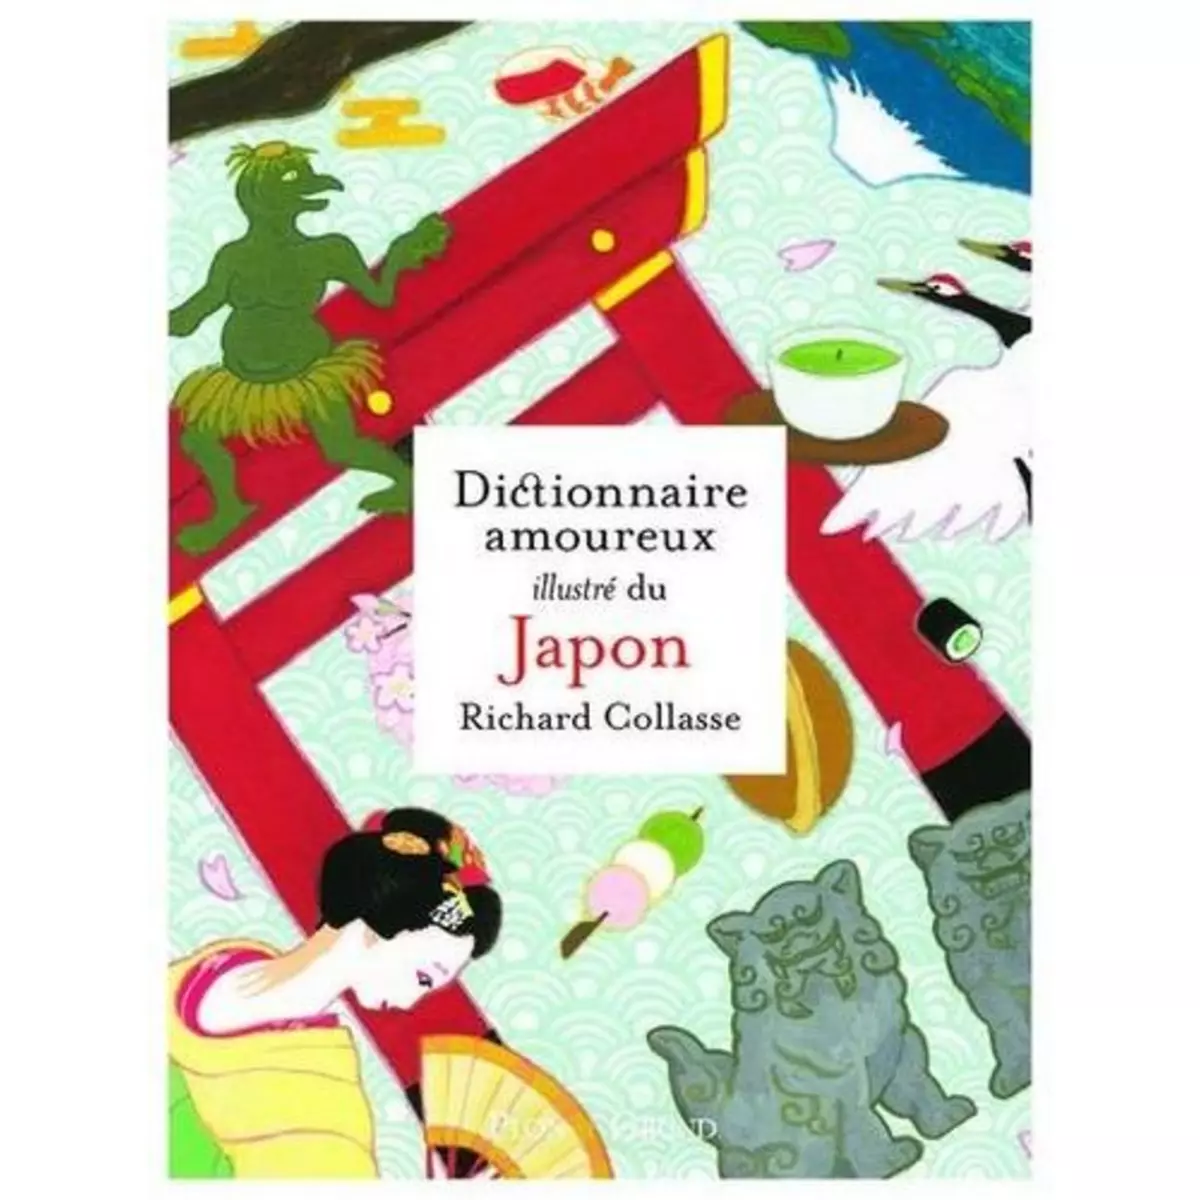  DICTIONNAIRE AMOUREUX ILLUSTRE DU JAPON, Collasse Richard